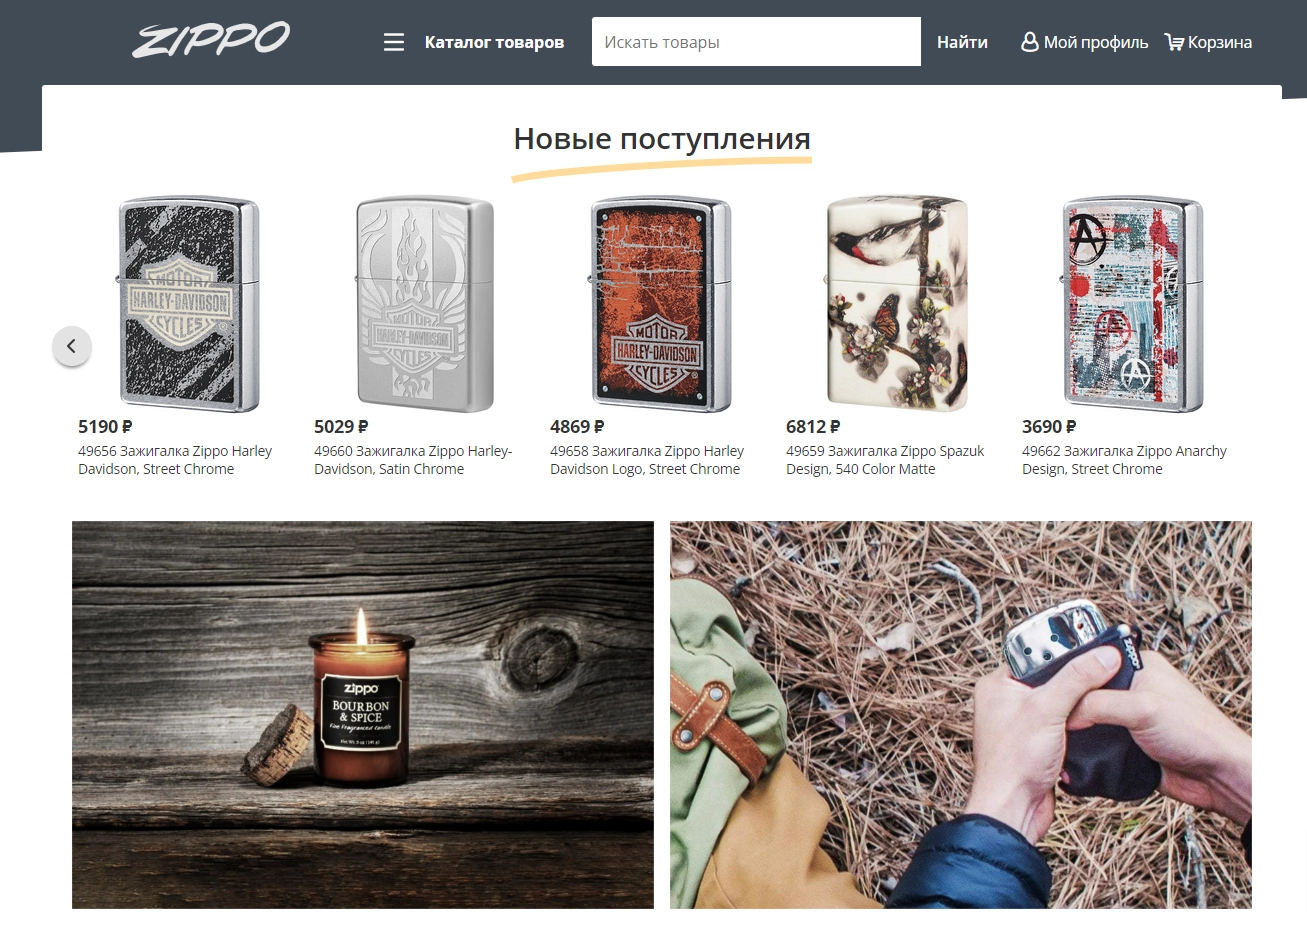 Zippo Россия - официальный магазин зажигалок известного бренда